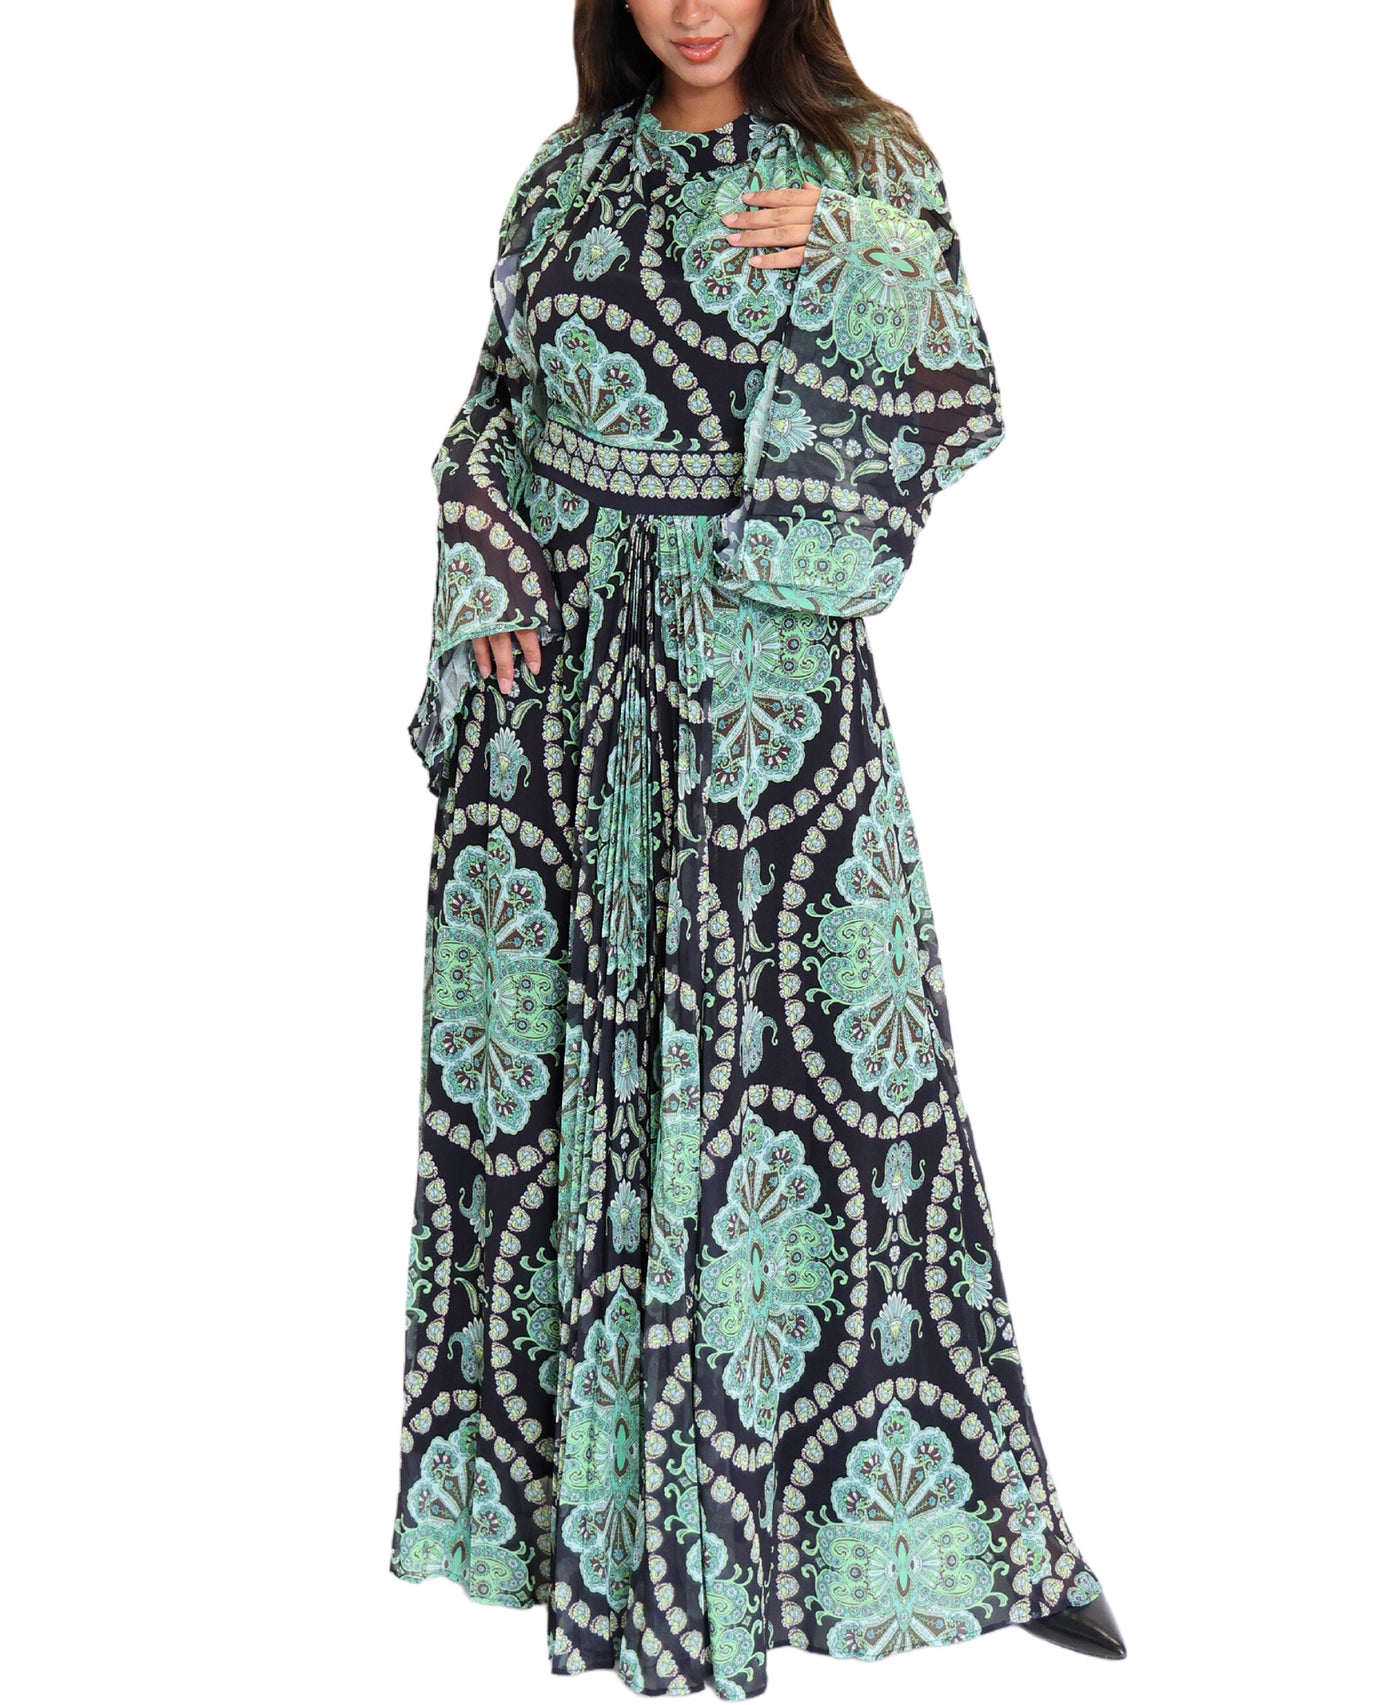 Abstract Print Maxi Dress image 1